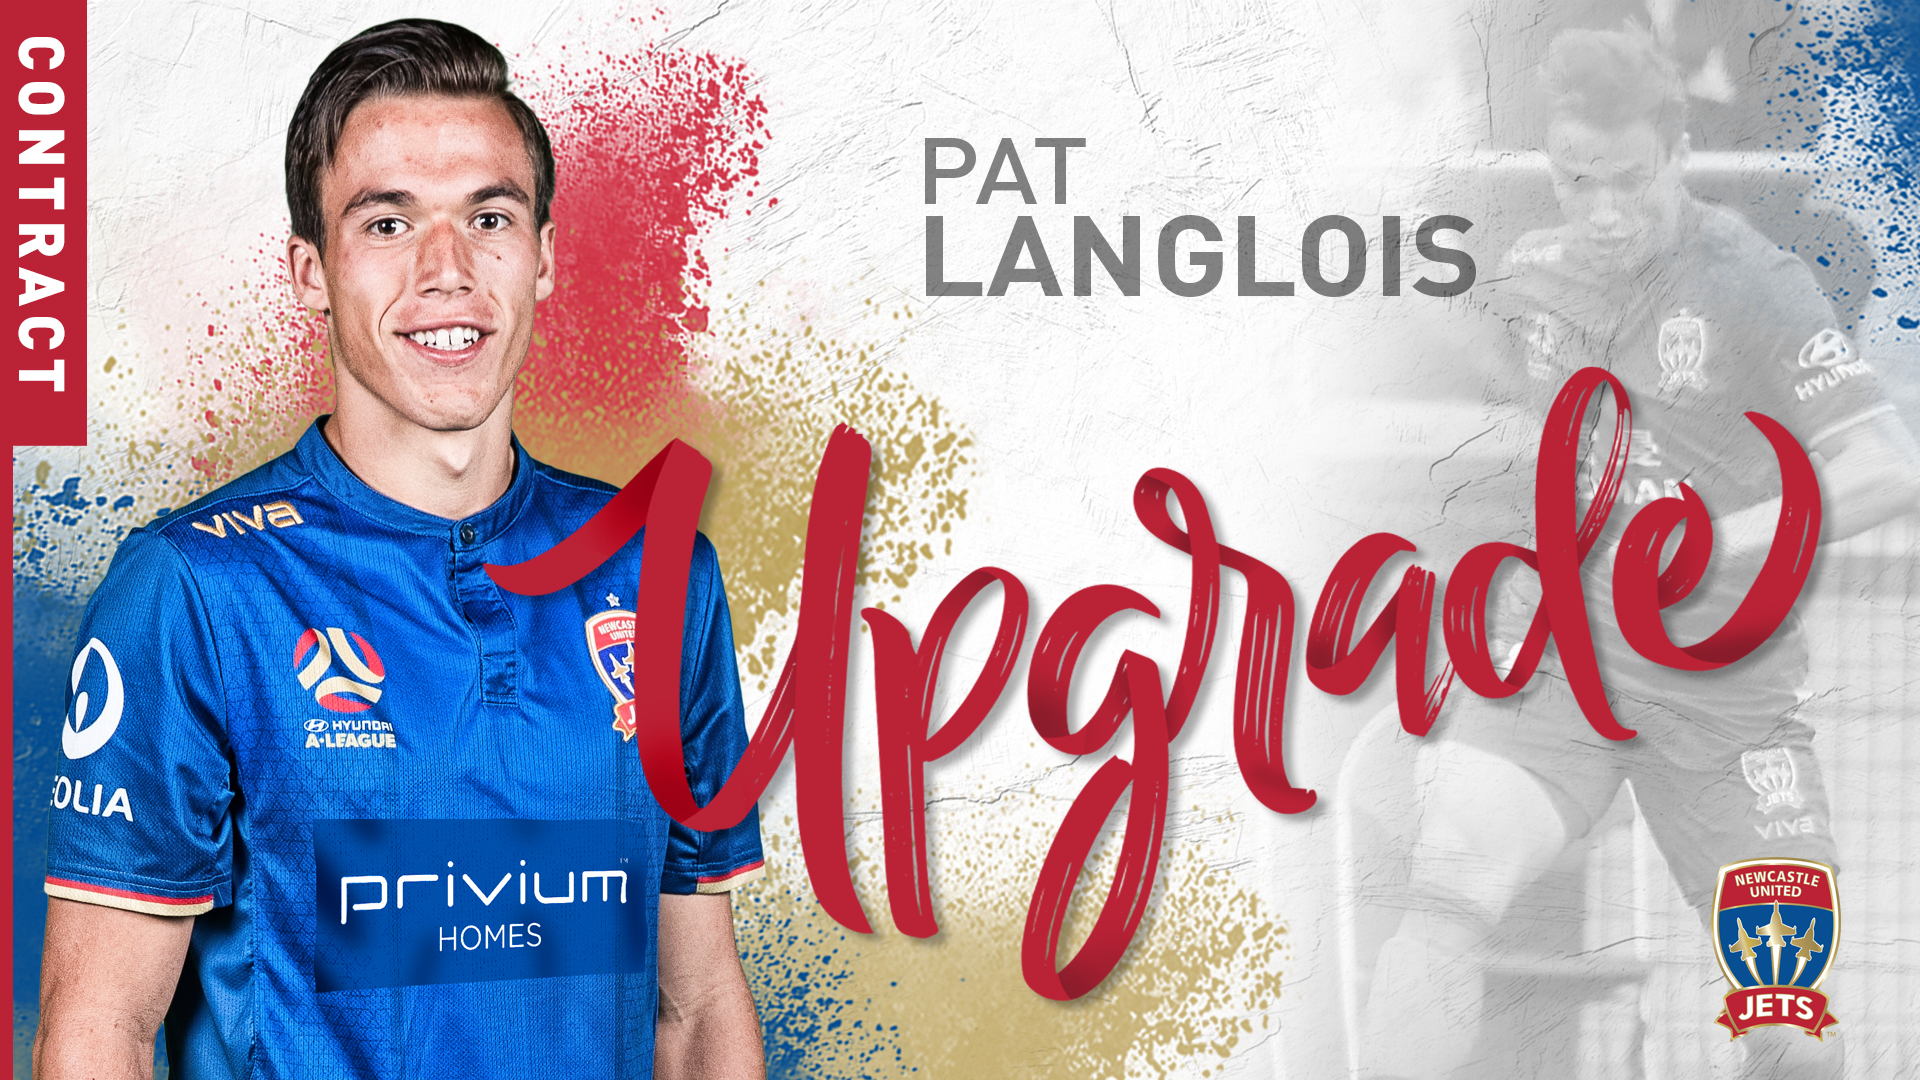 Pat Langlois signing